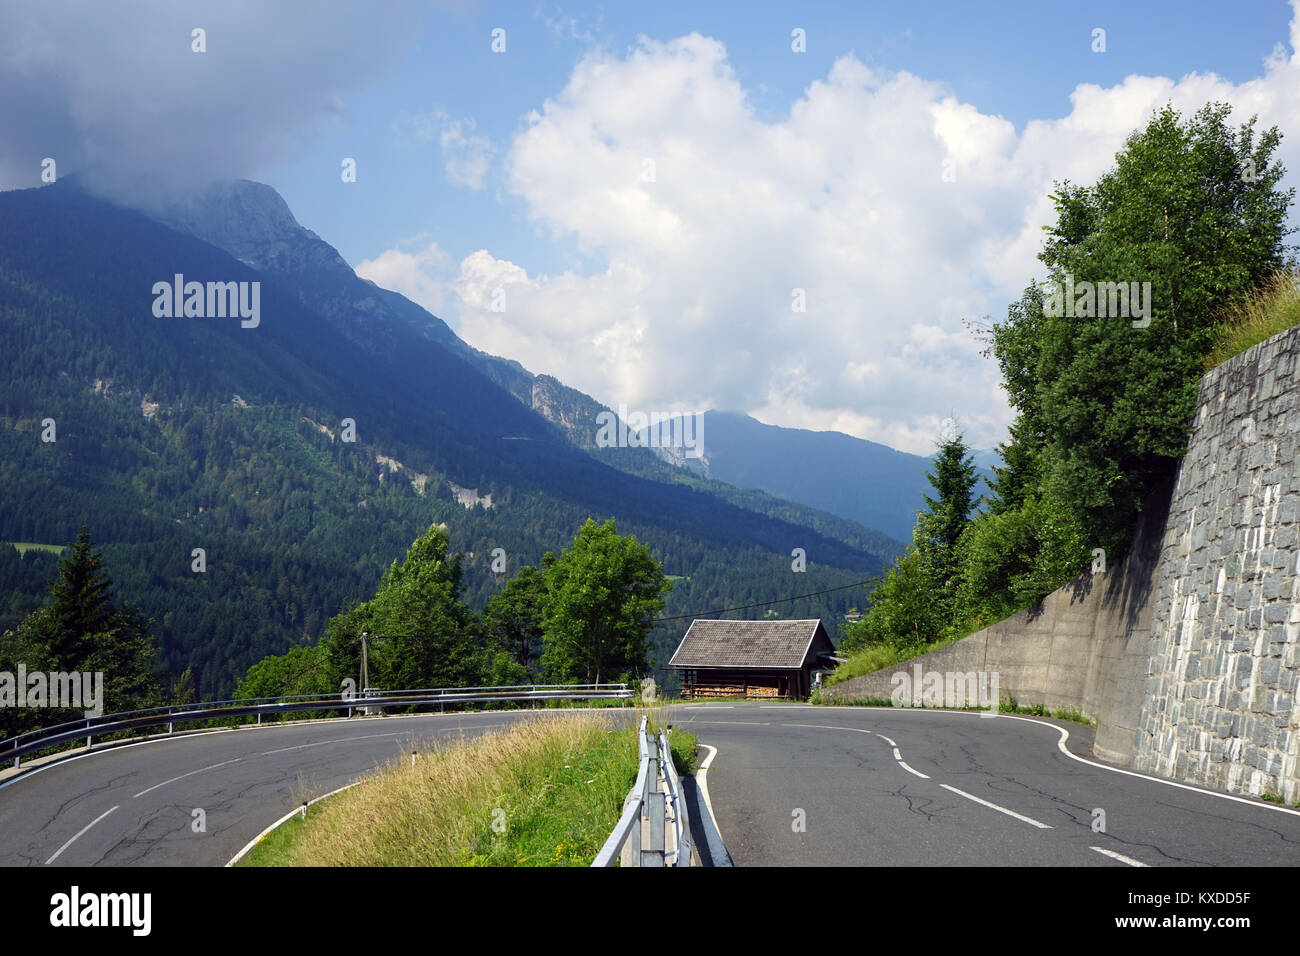 Eine scharfe Kurve der Straße in den Alpen in Österreich Stockfoto